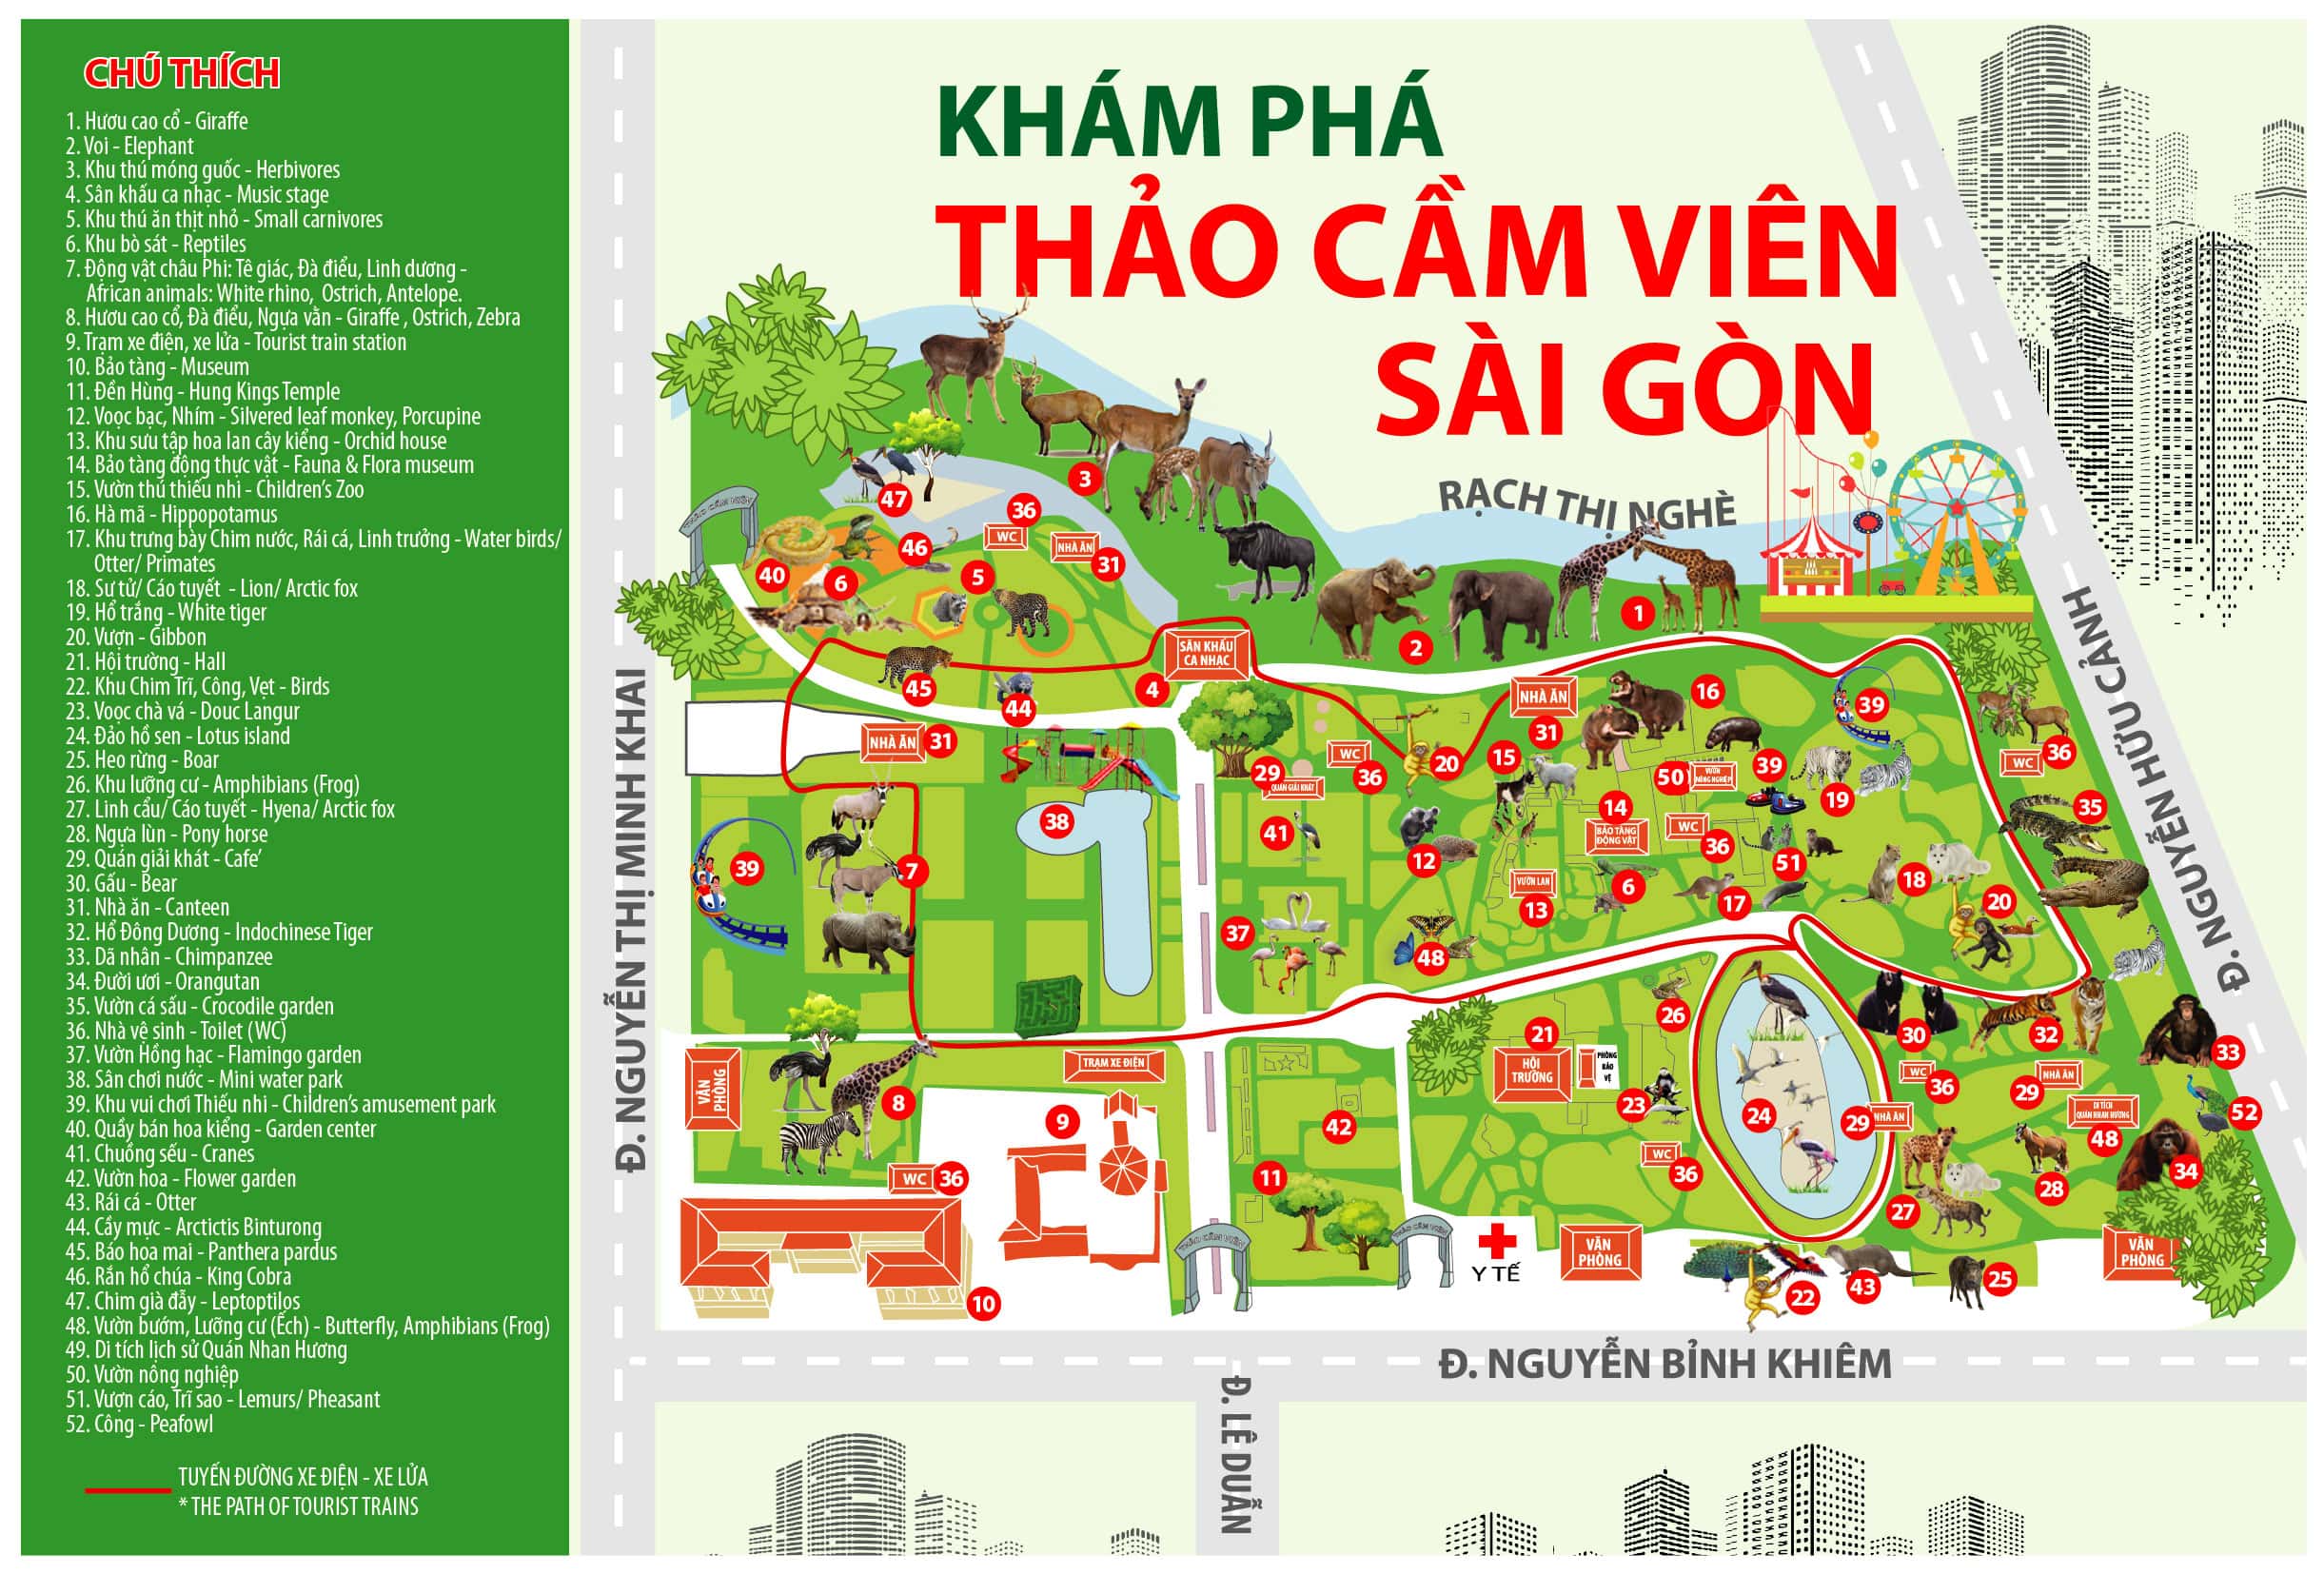 Thảo cầm viên ở Việt Nam đang ngày càng được thúc đẩy phát triển với những khu vườn xanh tươi, nhiều loại thực vật phong phú. Hãy đến với thảo cầm viên để thư giãn và khám phá vẻ đẹp thiên nhiên trong lòng thành phố.